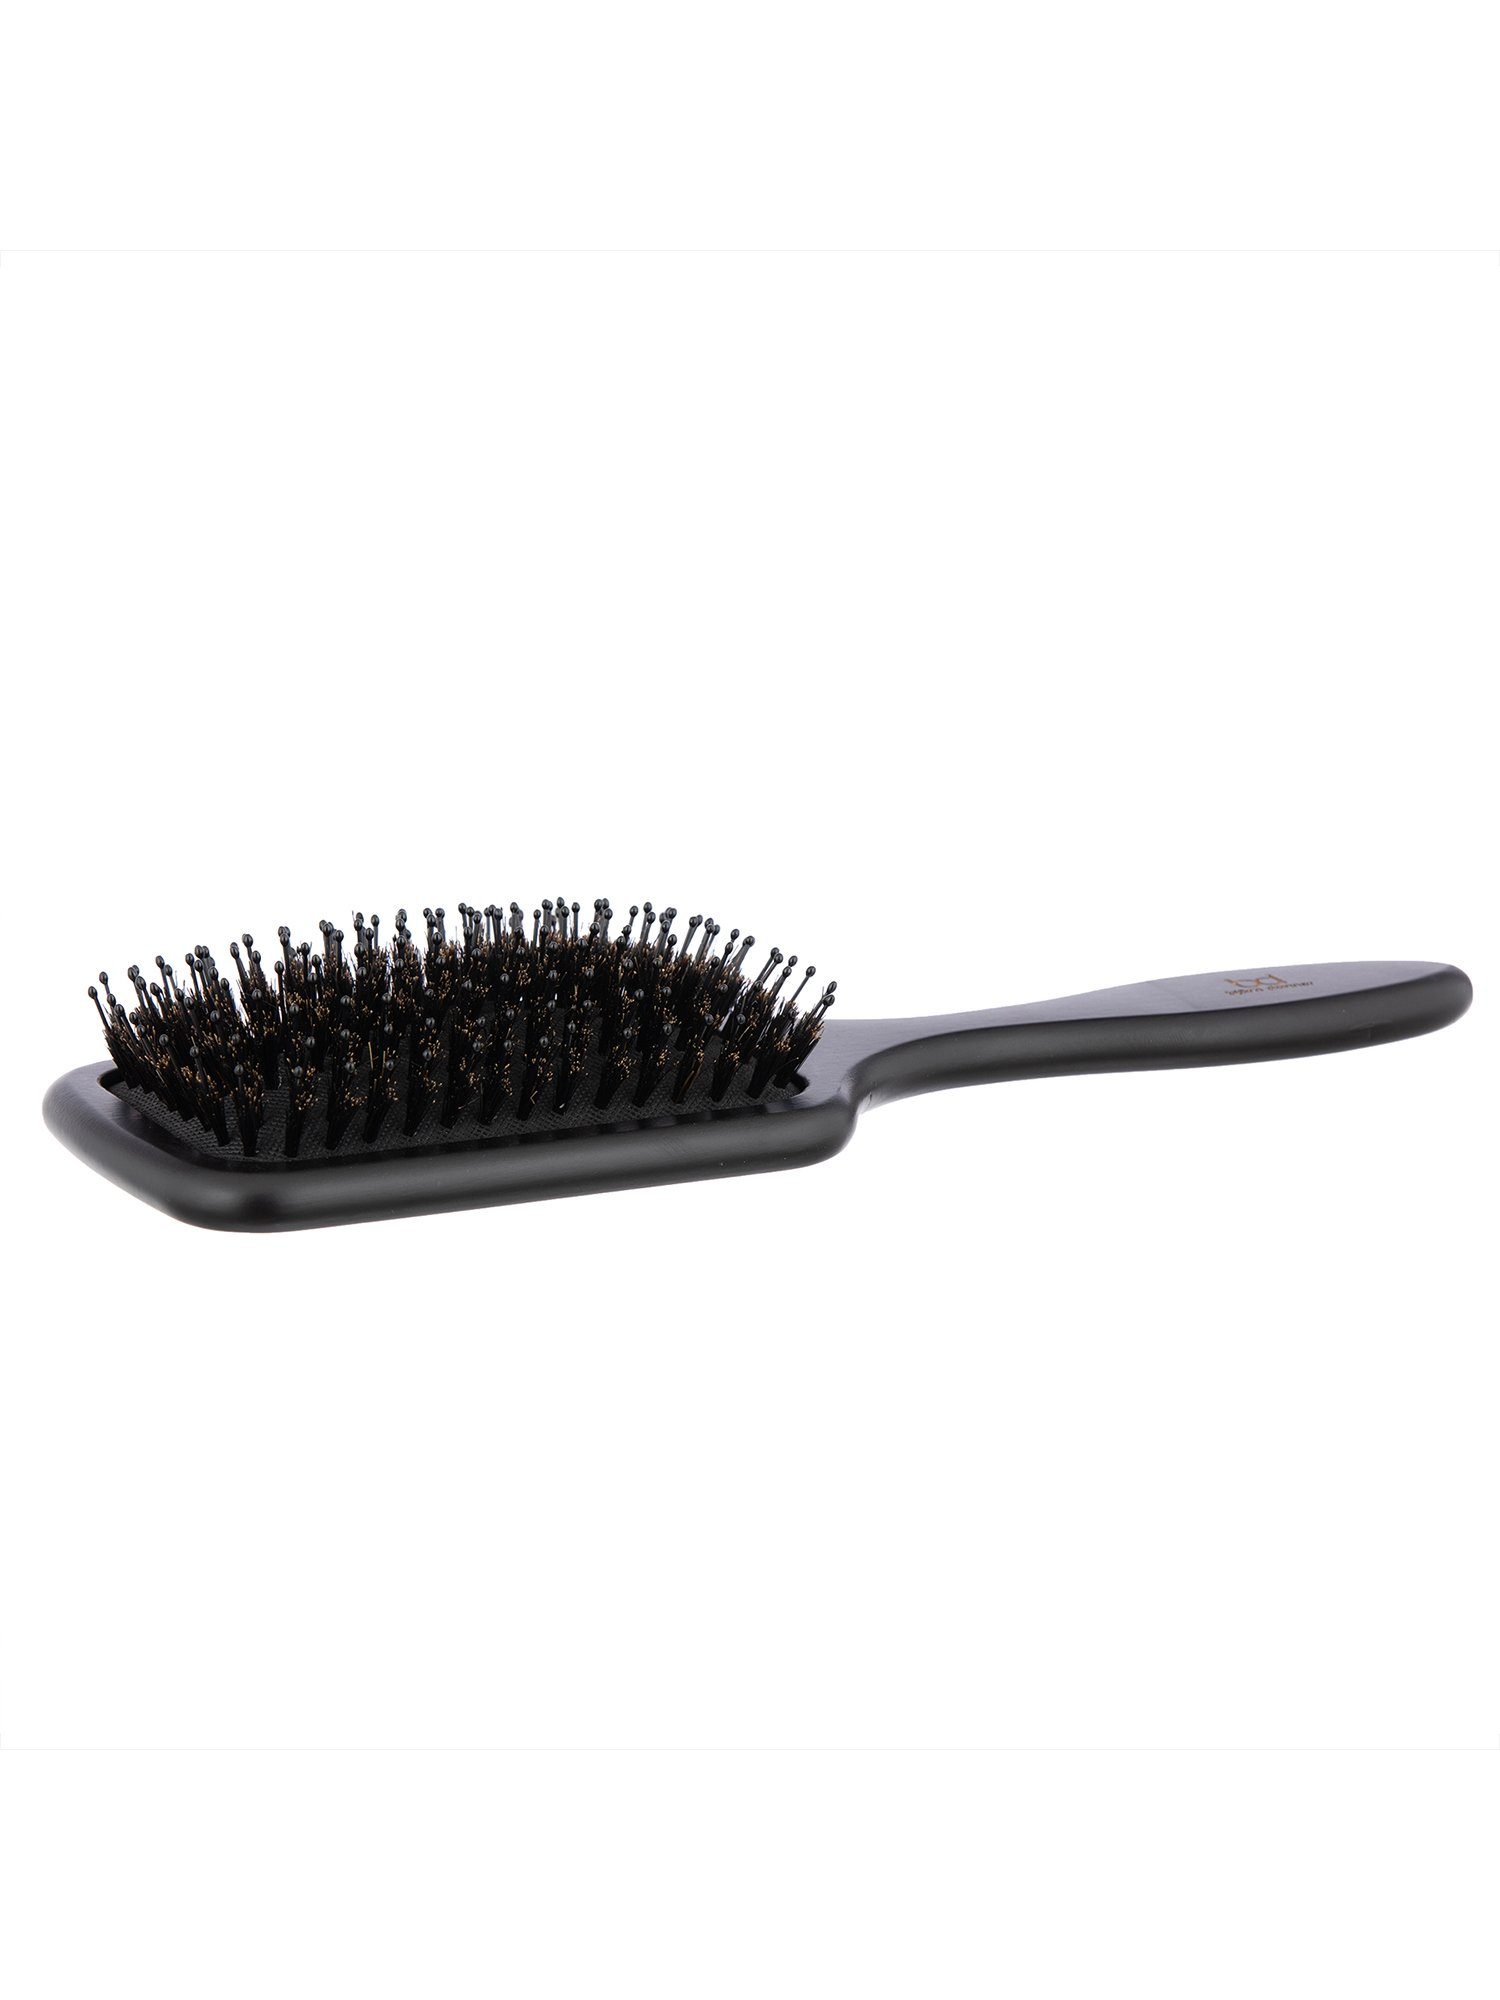 Björn Donner Haarbürste "Paddle Brush", für im Wildschweinborsten mehr Nylonstiften Haar benoppten & mit Glanz